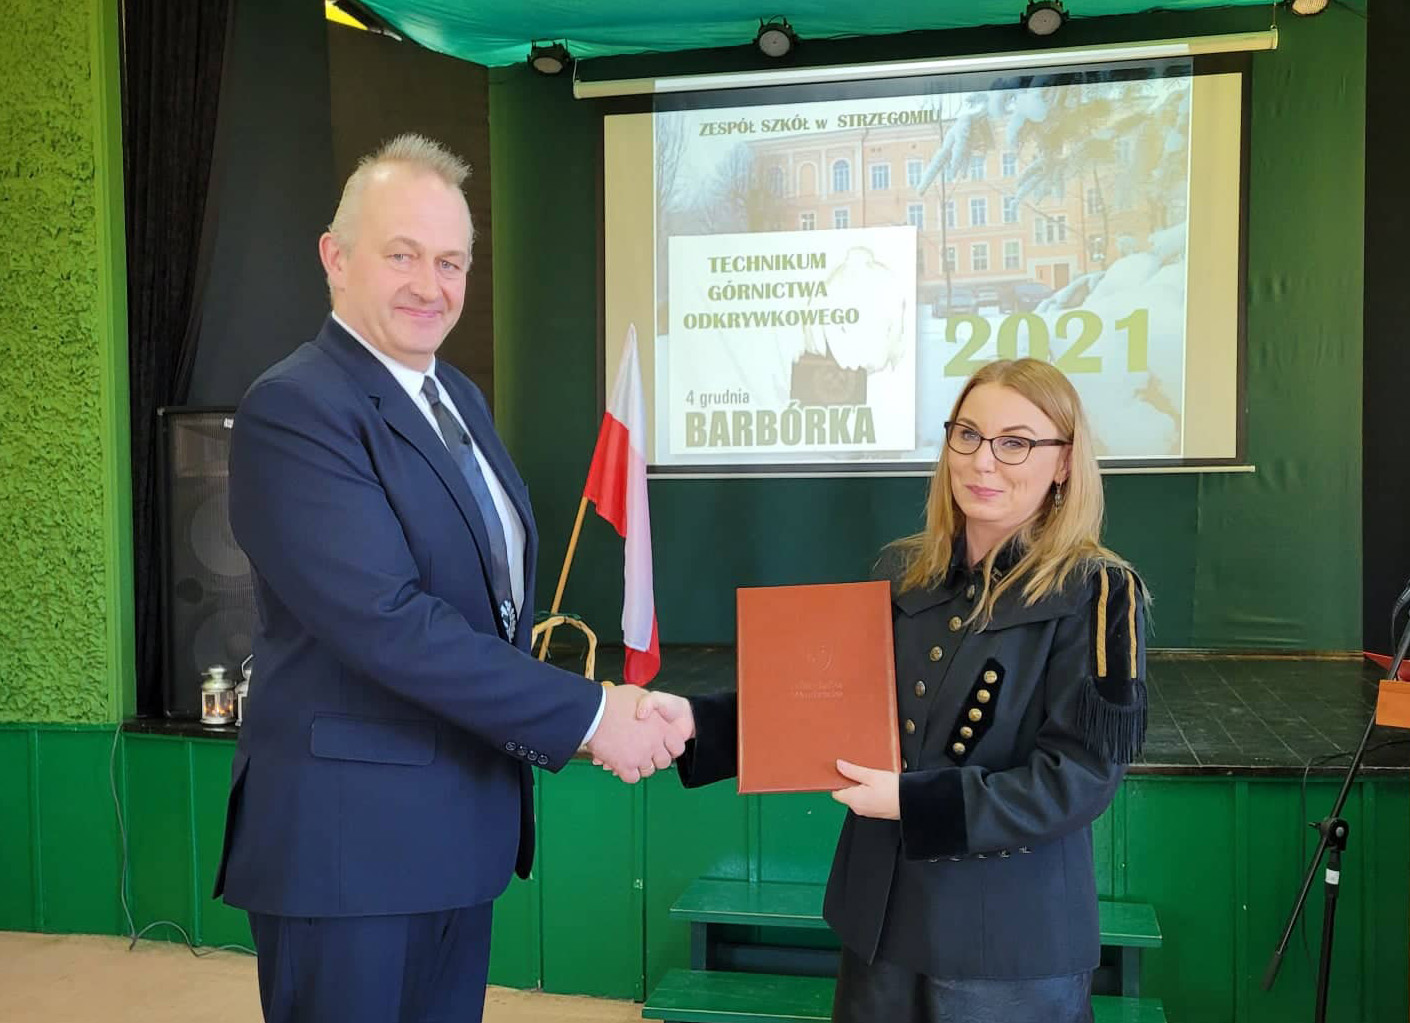 Zespół Szkół w Strzegomiu podpisał porozumienie z Politechniką Wrocławską [AUDIO+FOTO]